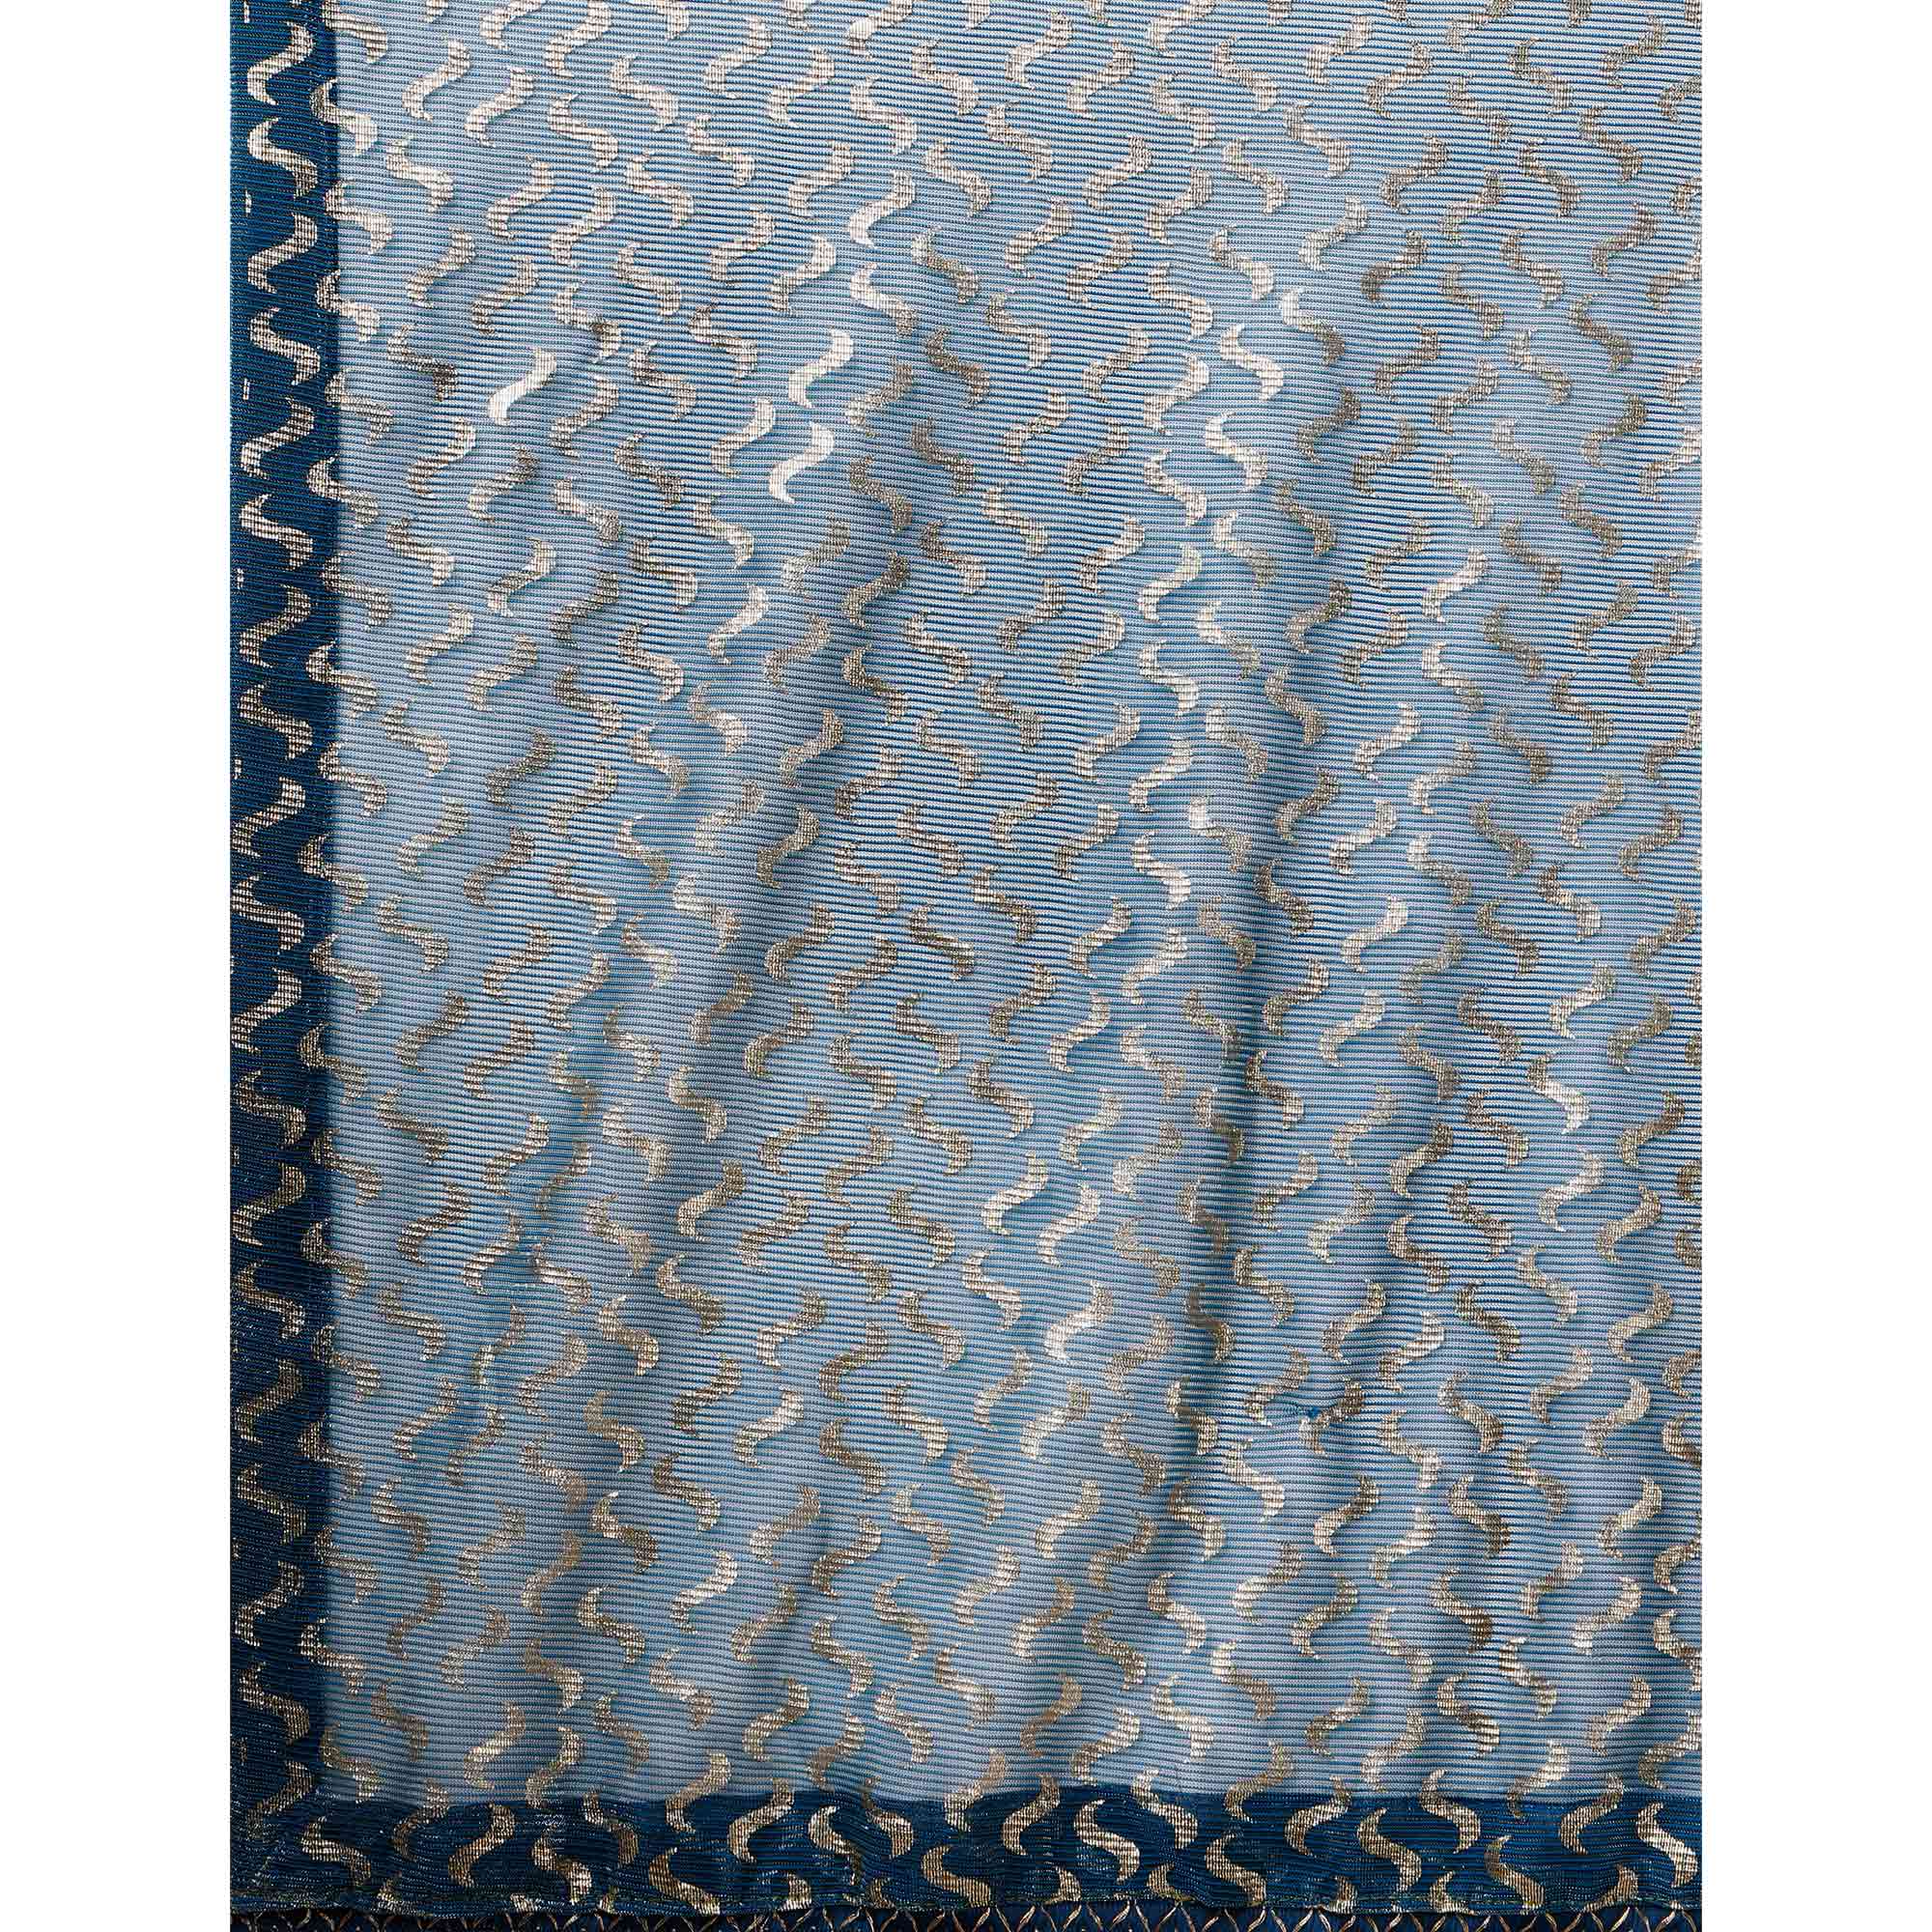 Teal Blue Foil Printed Rayon Saree